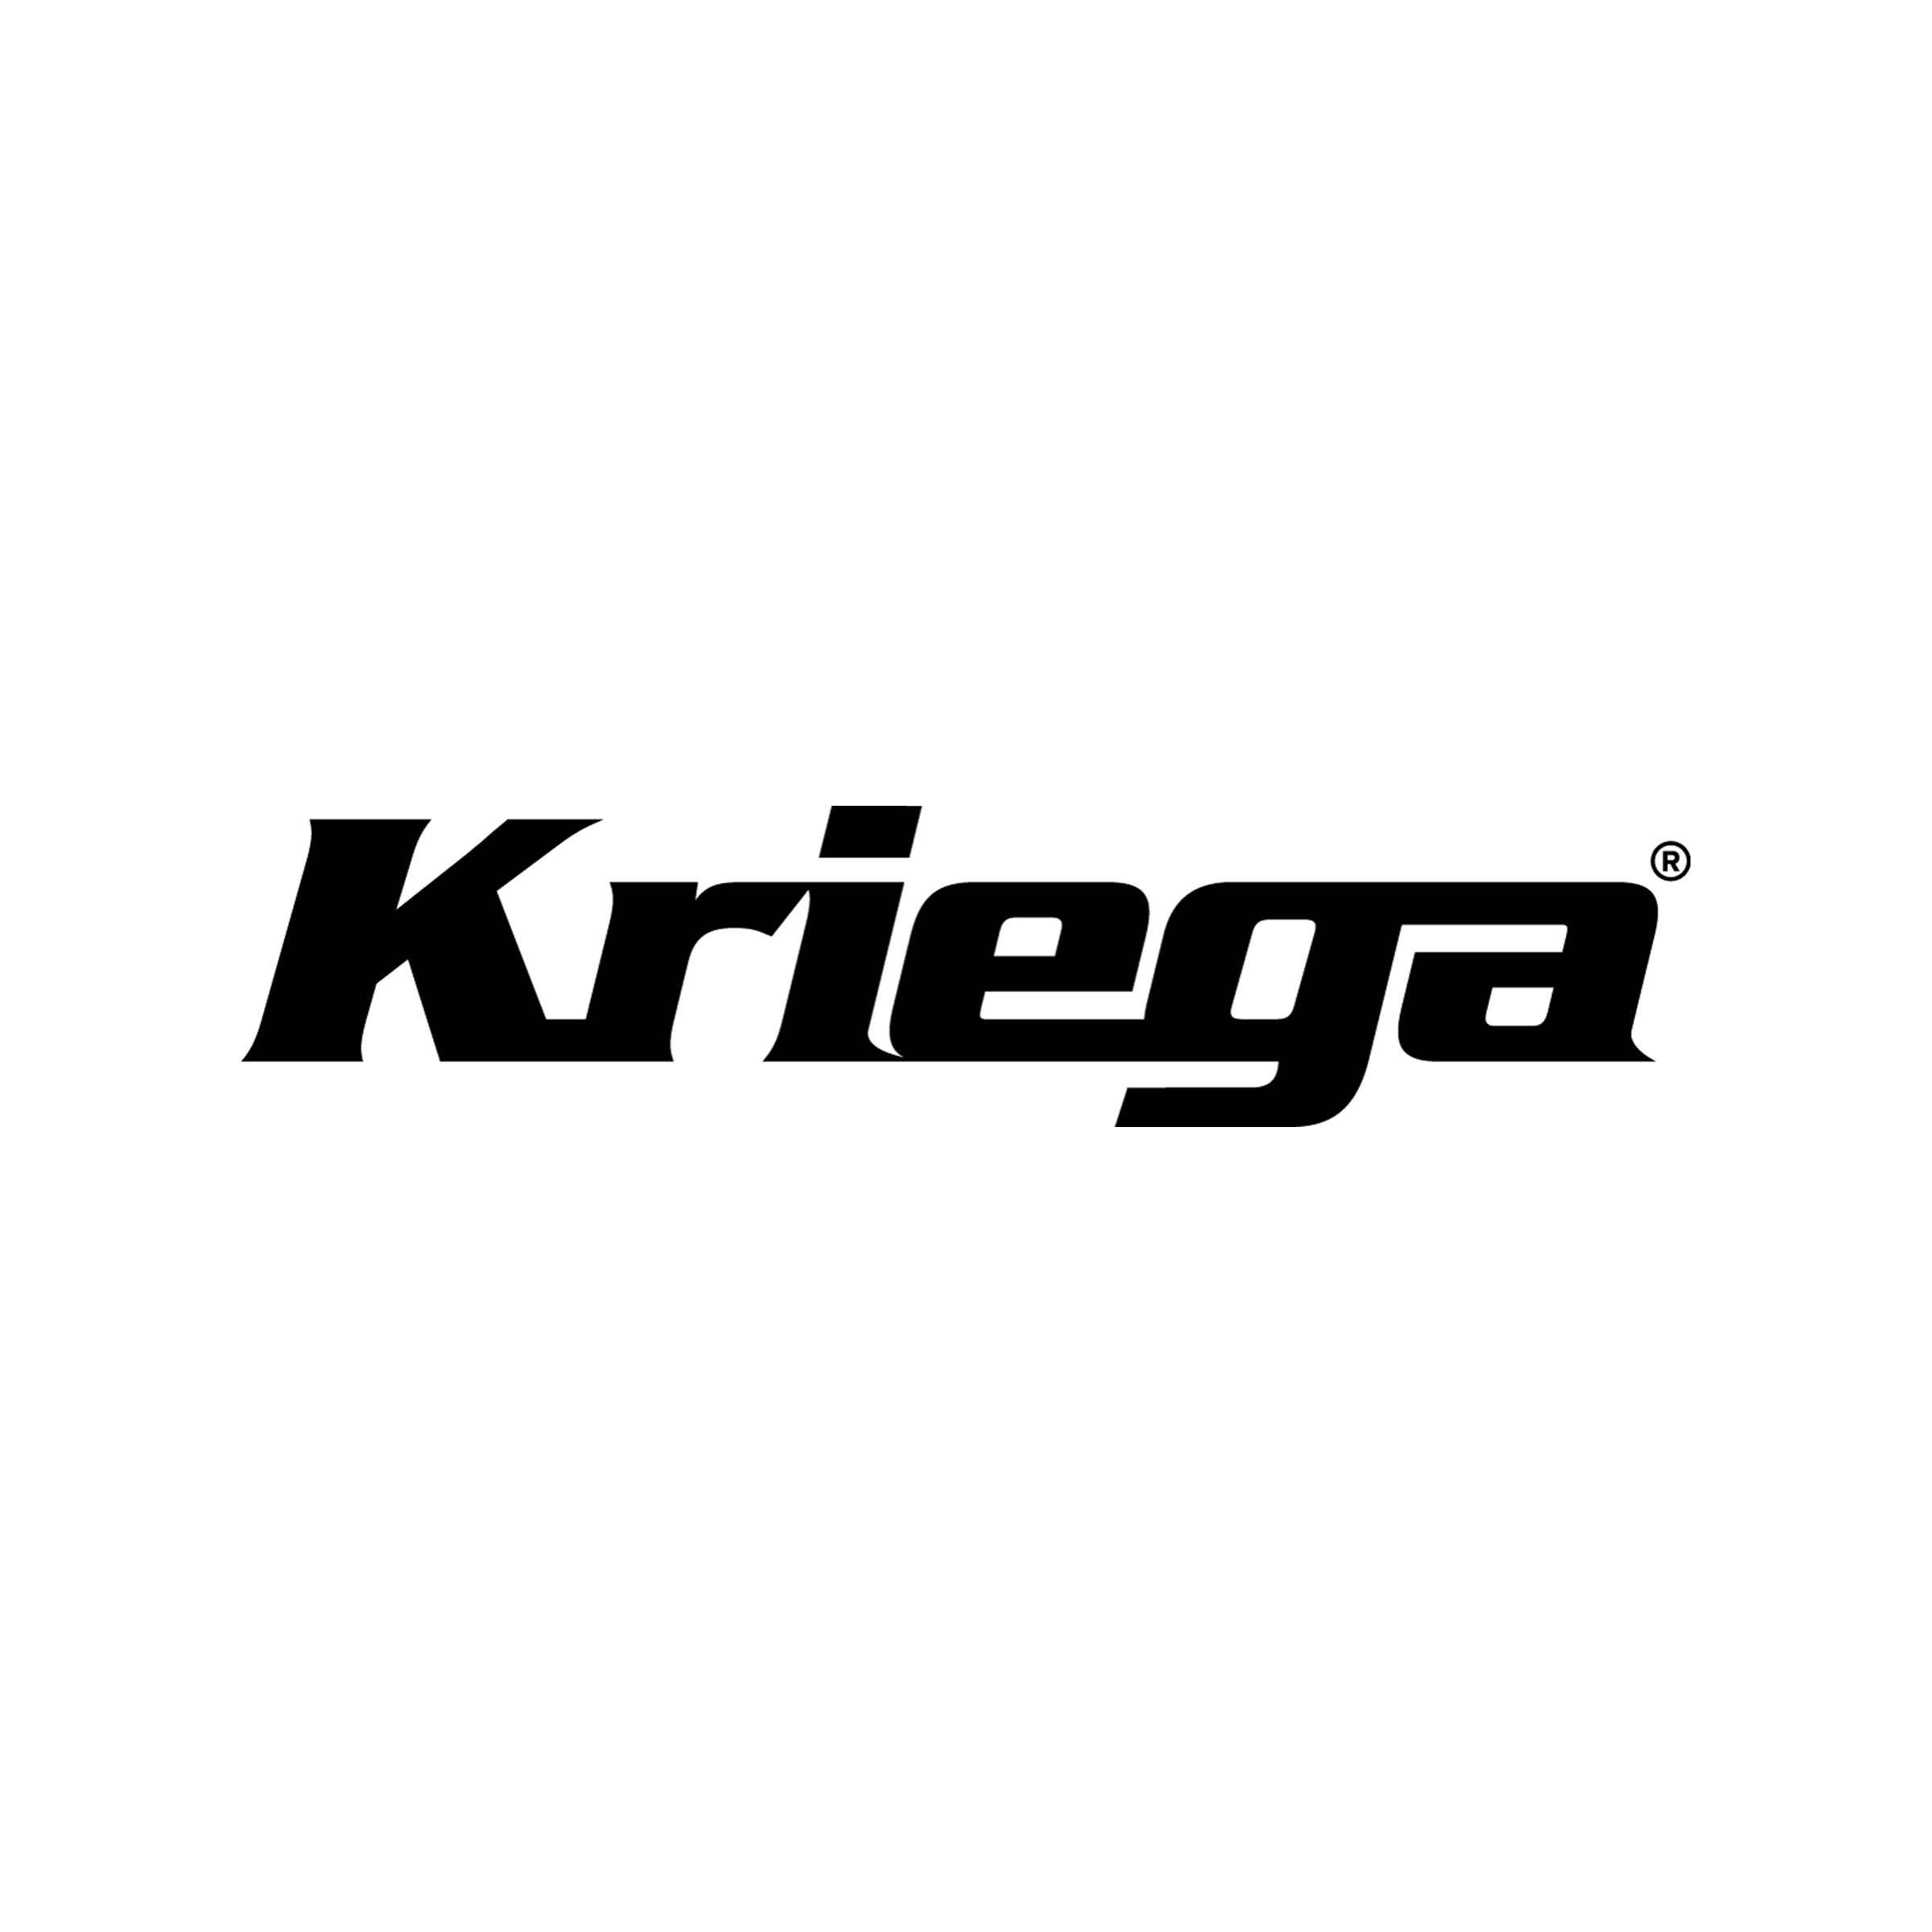 クリーガ（Kriega）